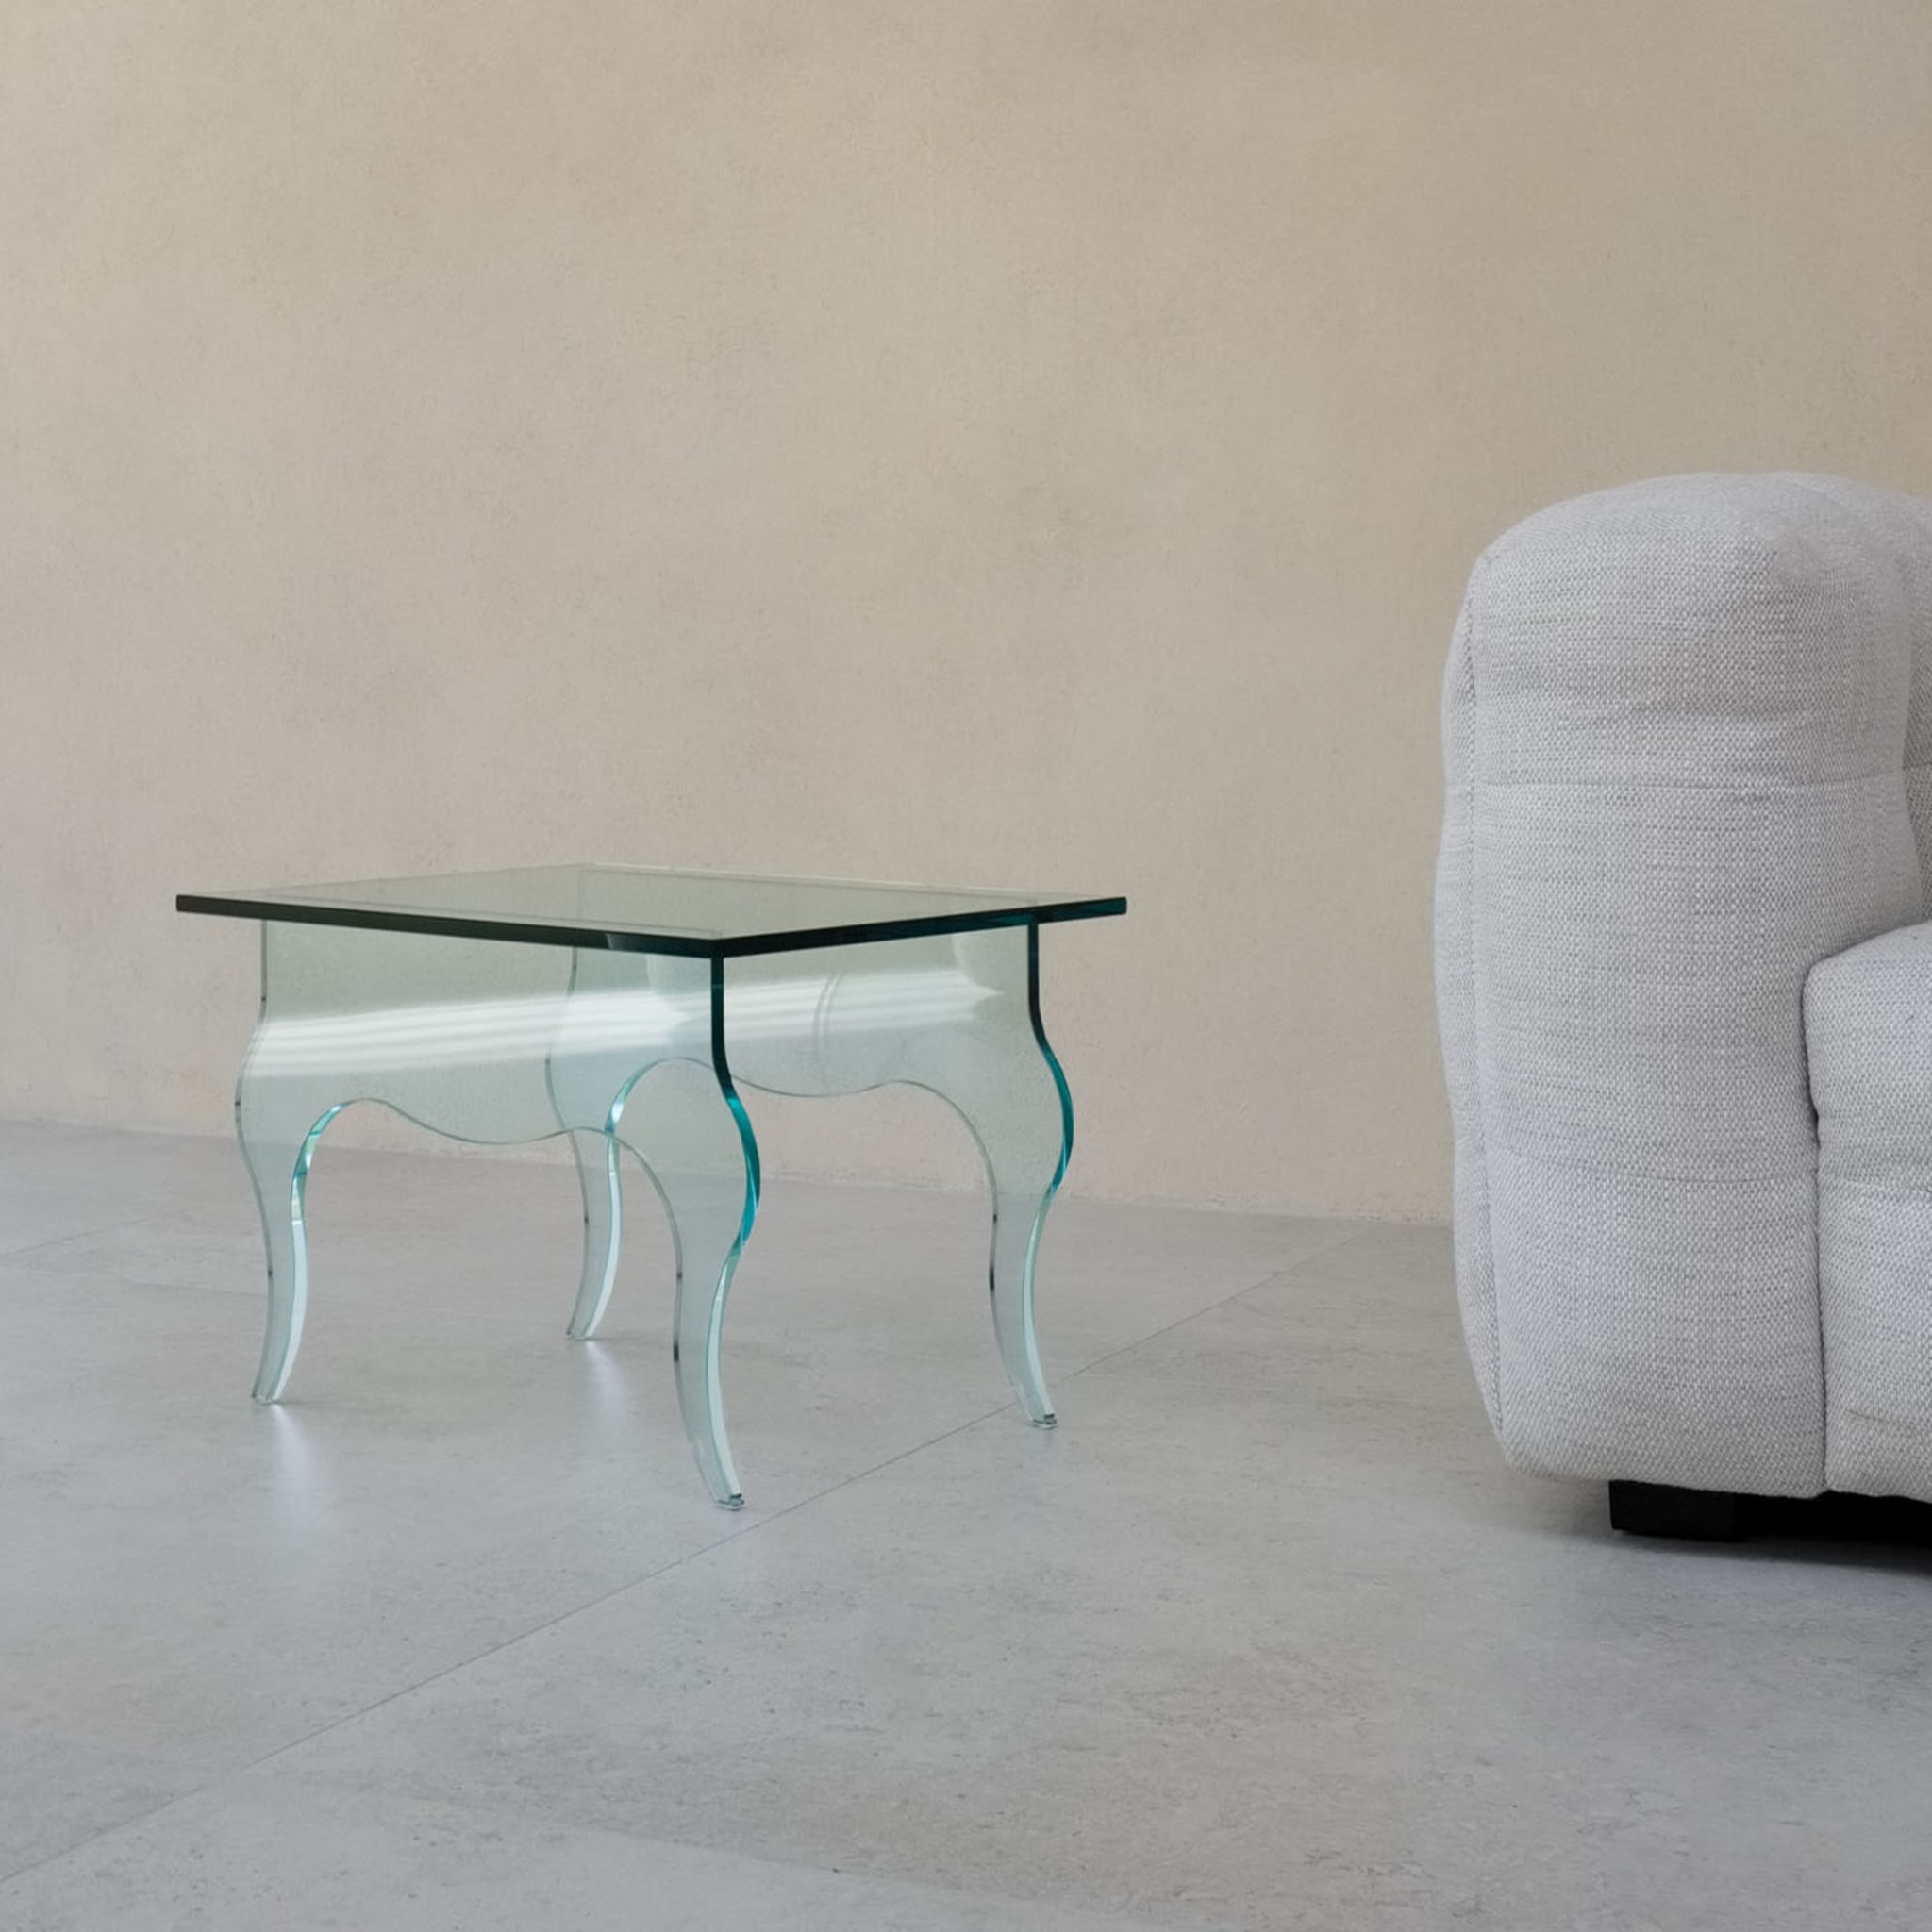 Edmondo Side Table by Andrea Petterini - Alternative view 3